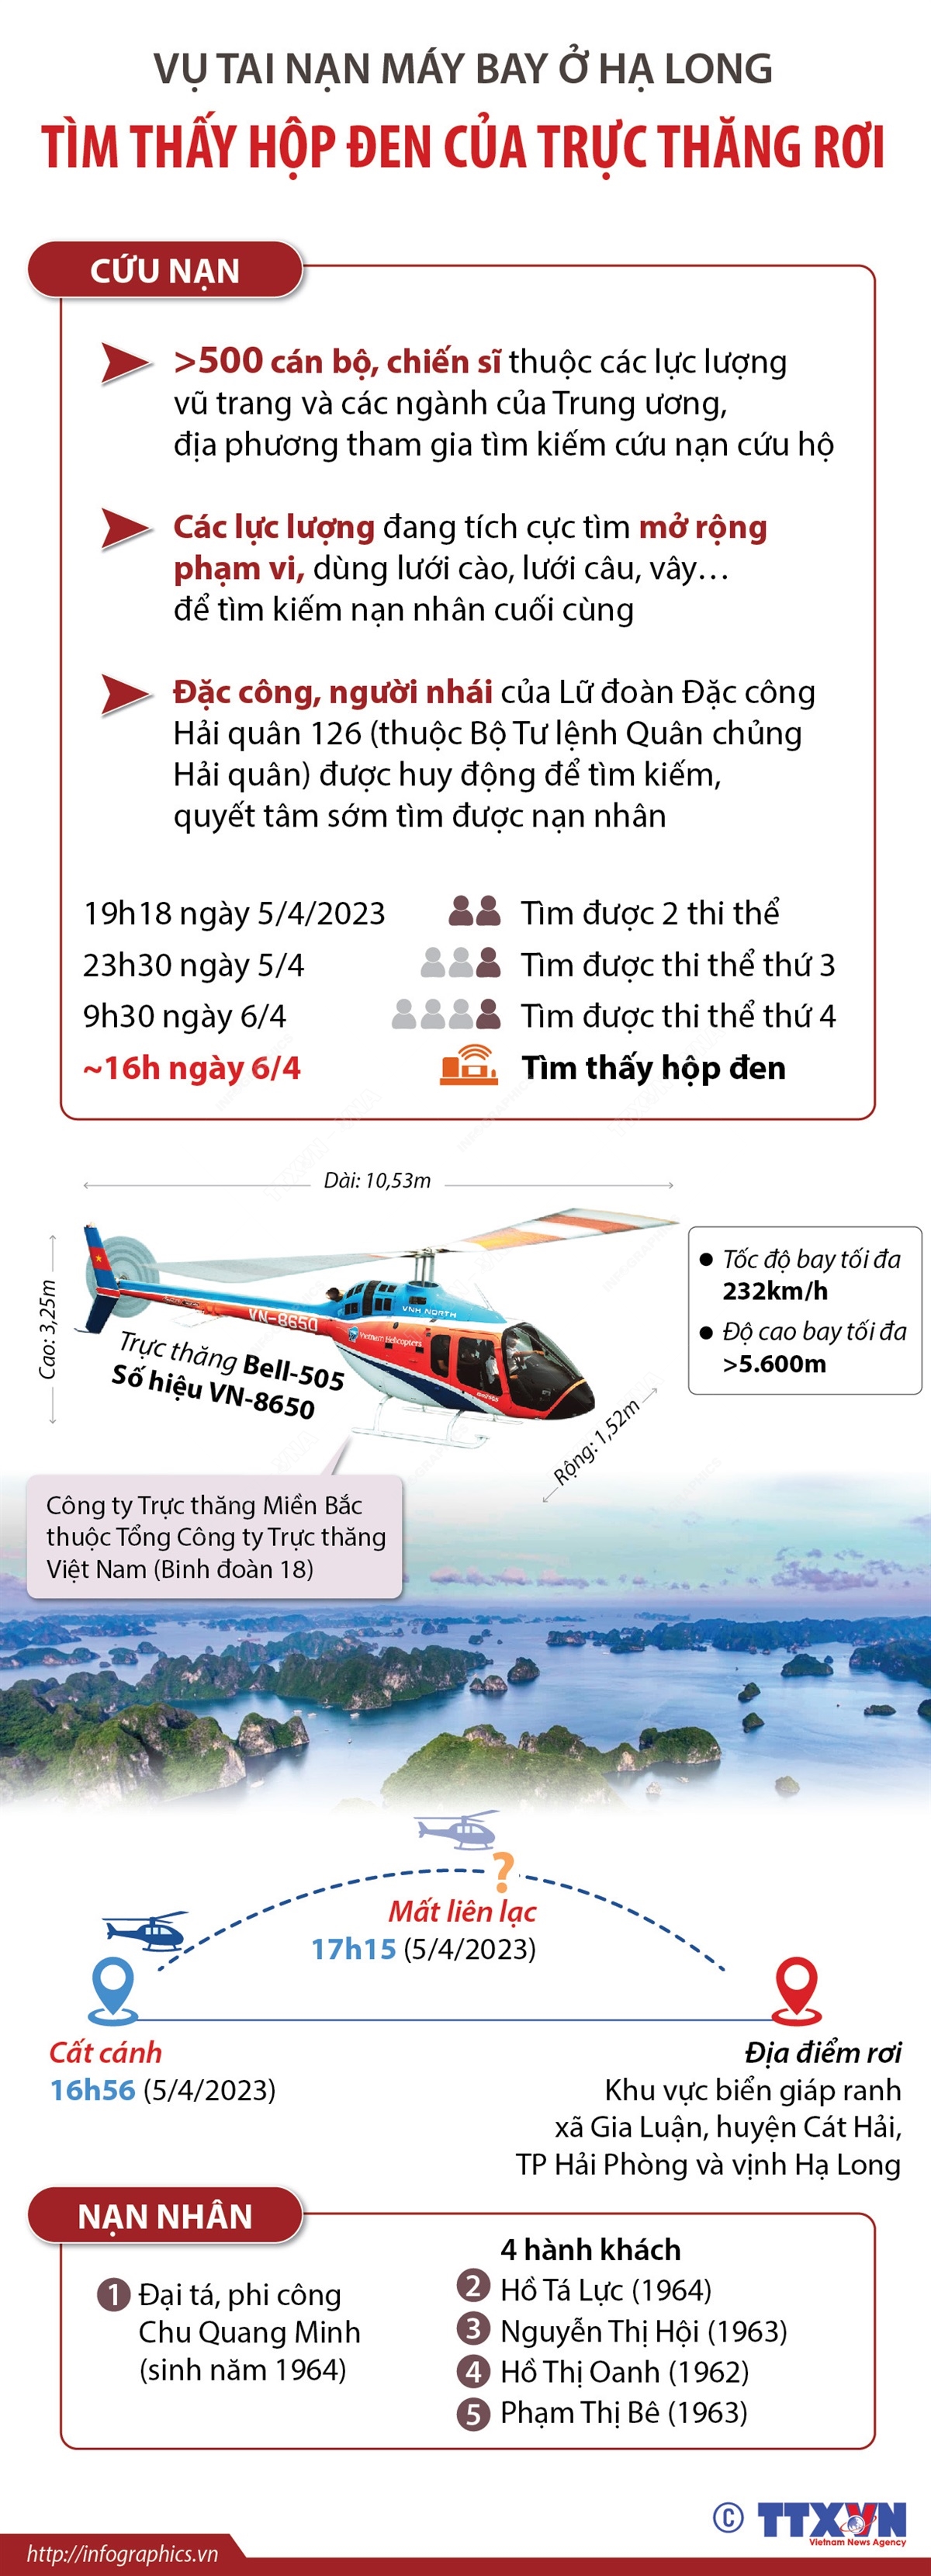 Vụ rơi trực thăng ở vịnh Hạ Long: Phi công đã cố gắng đưa máy bay đến khu vực an toàn - Ảnh 2.